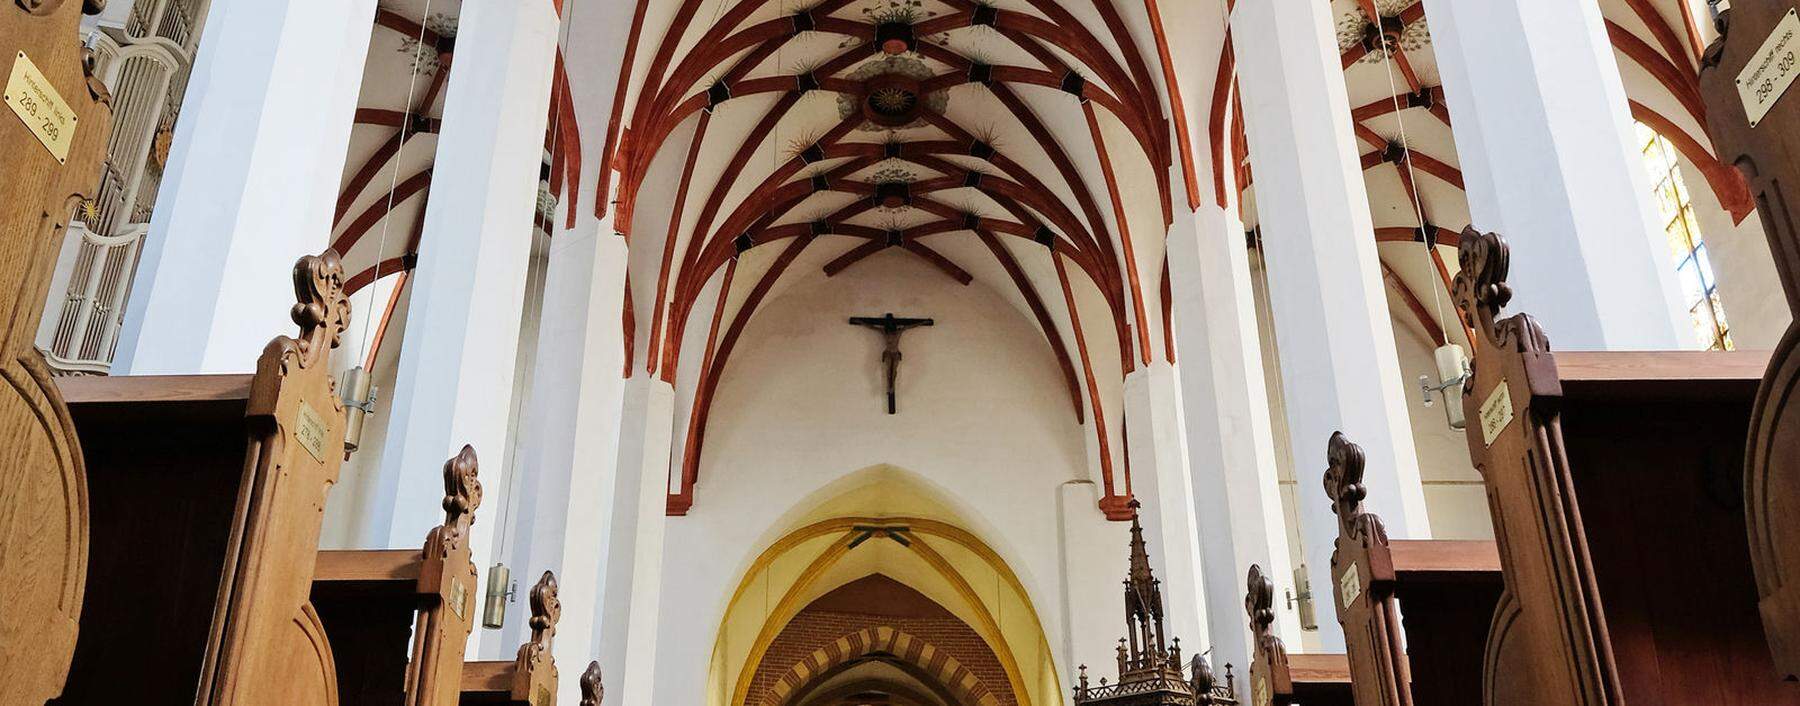 Gotische Gewölbe als „Lautsprecher des Mittelalters“: Netzrippengewölbe der Thomaskirche in Leipzig, wo Bach die letzten 27 Jahre seines Lebens wirkte.